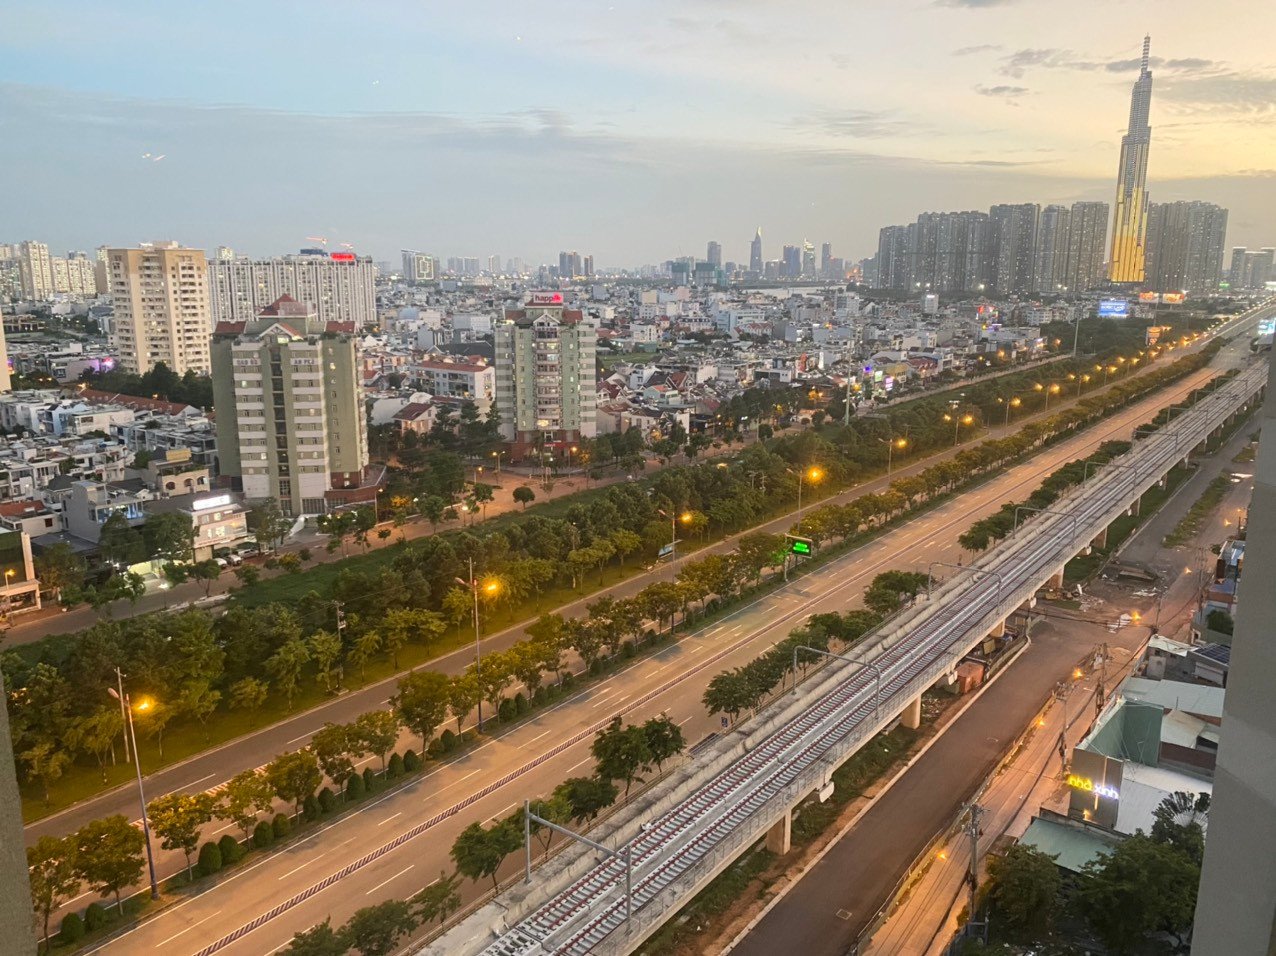 Tuyến đường Xa lộ Hà Nội có vai trò kết nối 3 điểm tam giác kinh tế  là TP HCM – Biên Hoà – Bình Dương. Hằng ngày hàng hóa trung chuyển qua tuyến đường vô cùng lớn. Nhưng hôm nay chỉ lác đác vài chuyến xe.